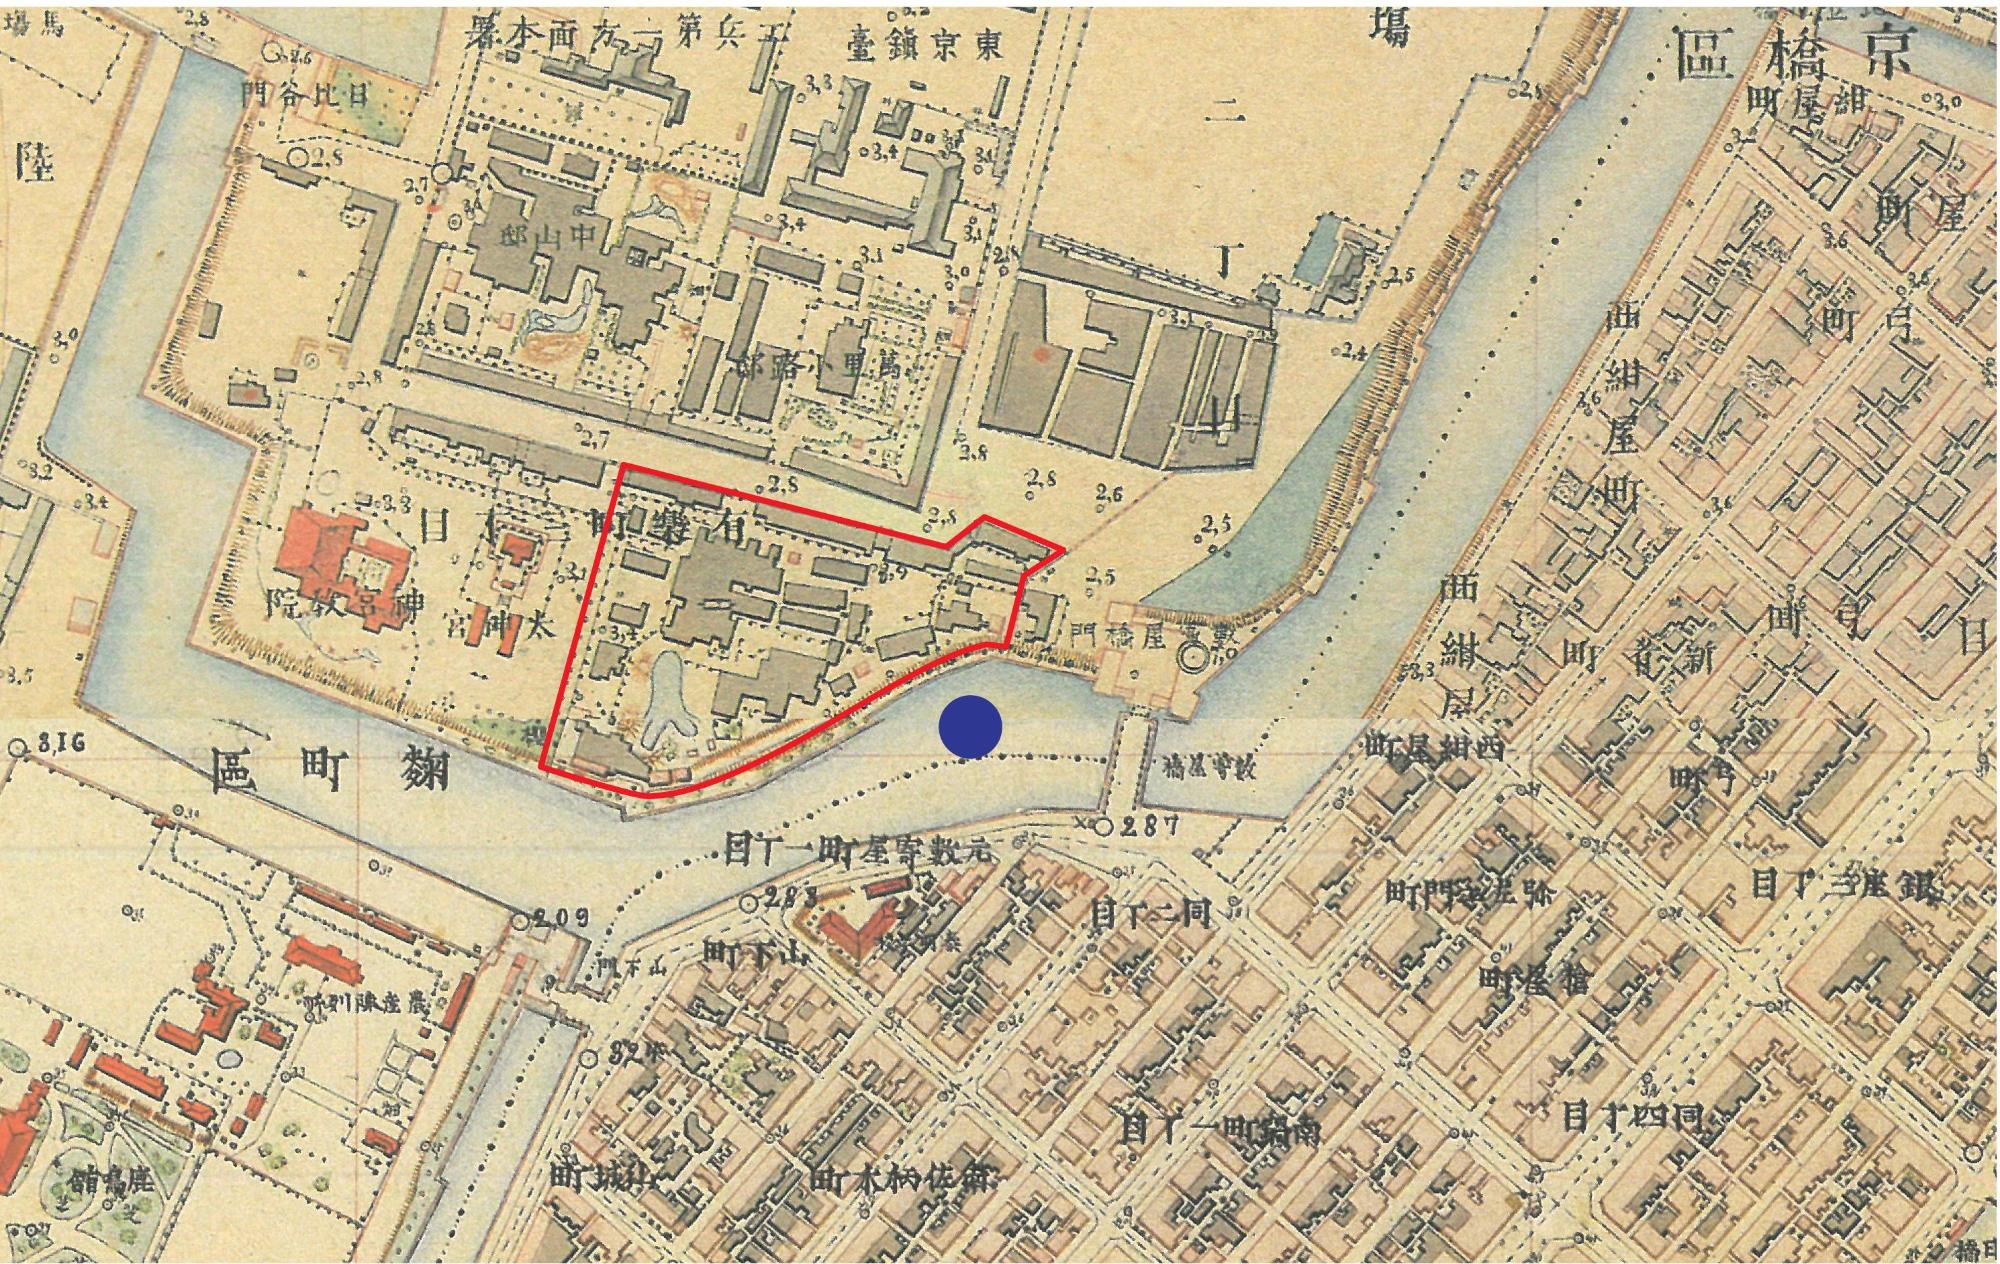 上屋敷地の説明板設置位置を示した地図